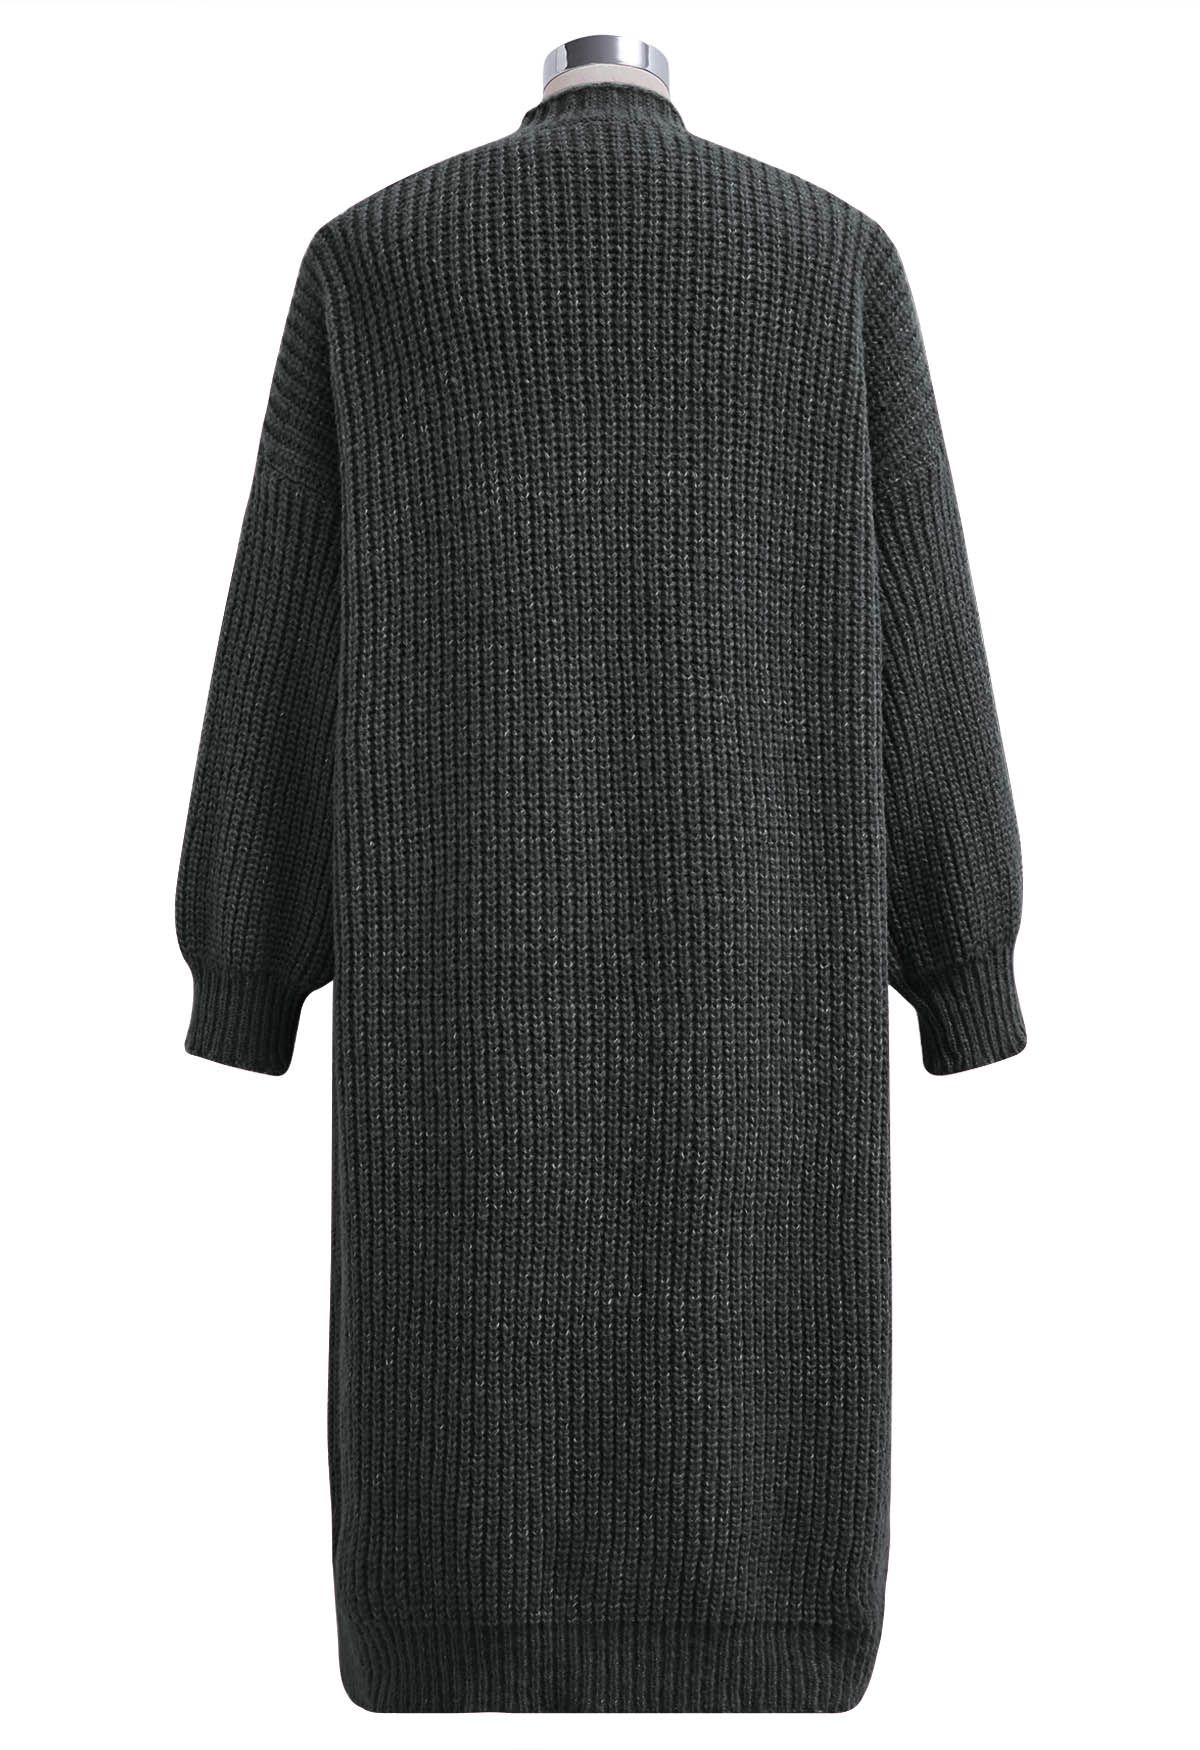 طقم فستان محبوك بدون أكمام بياقة على شكل حرف V وسترة صوفية طويلة باللون الدخاني